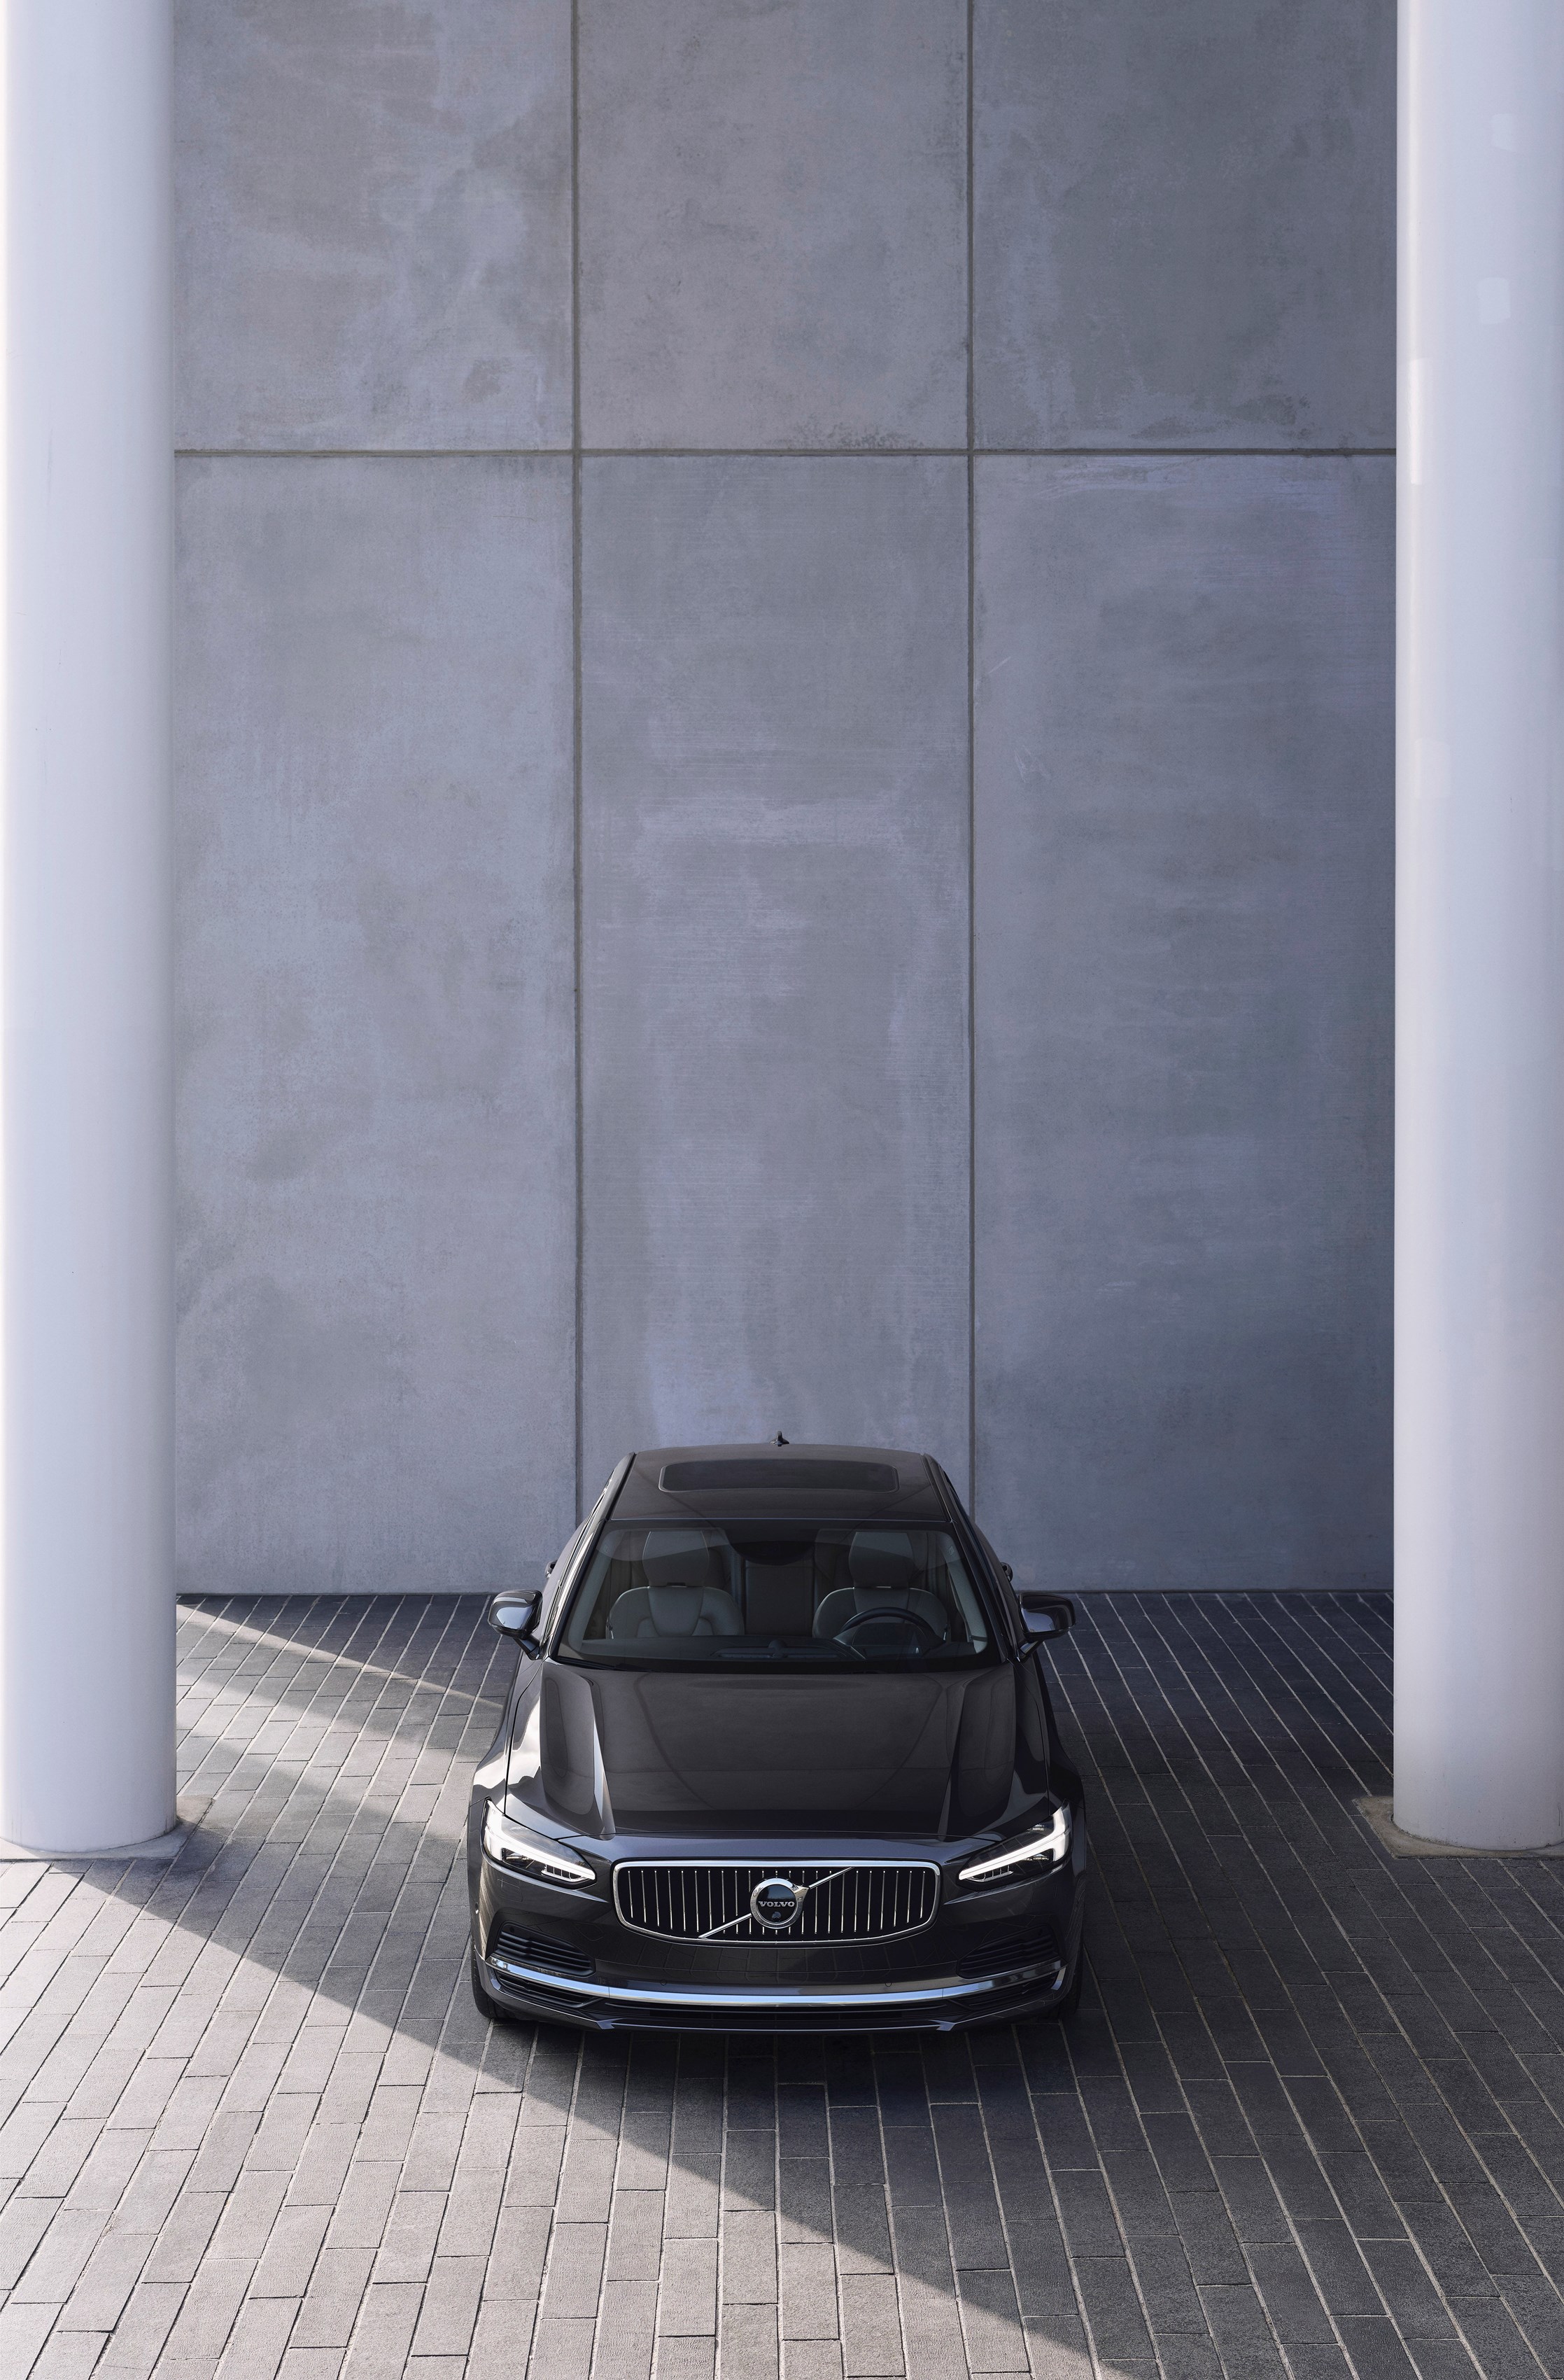 Volvo S90 exterior 2020